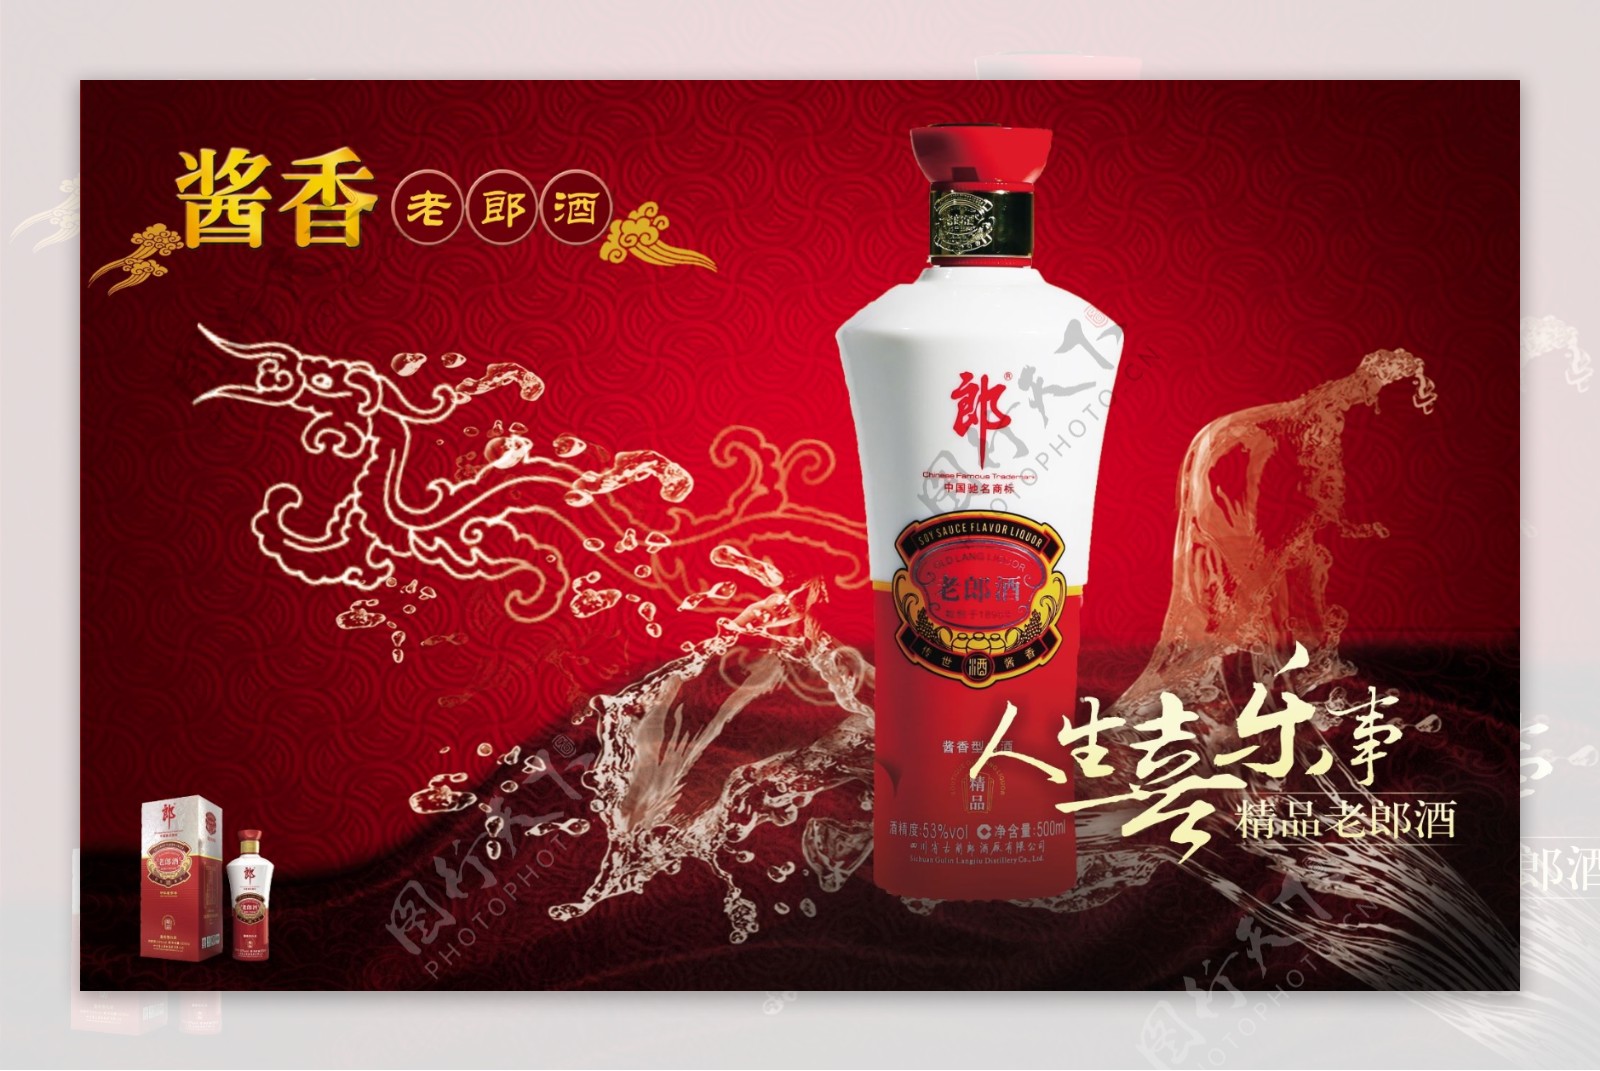 酒类中国风广告素材